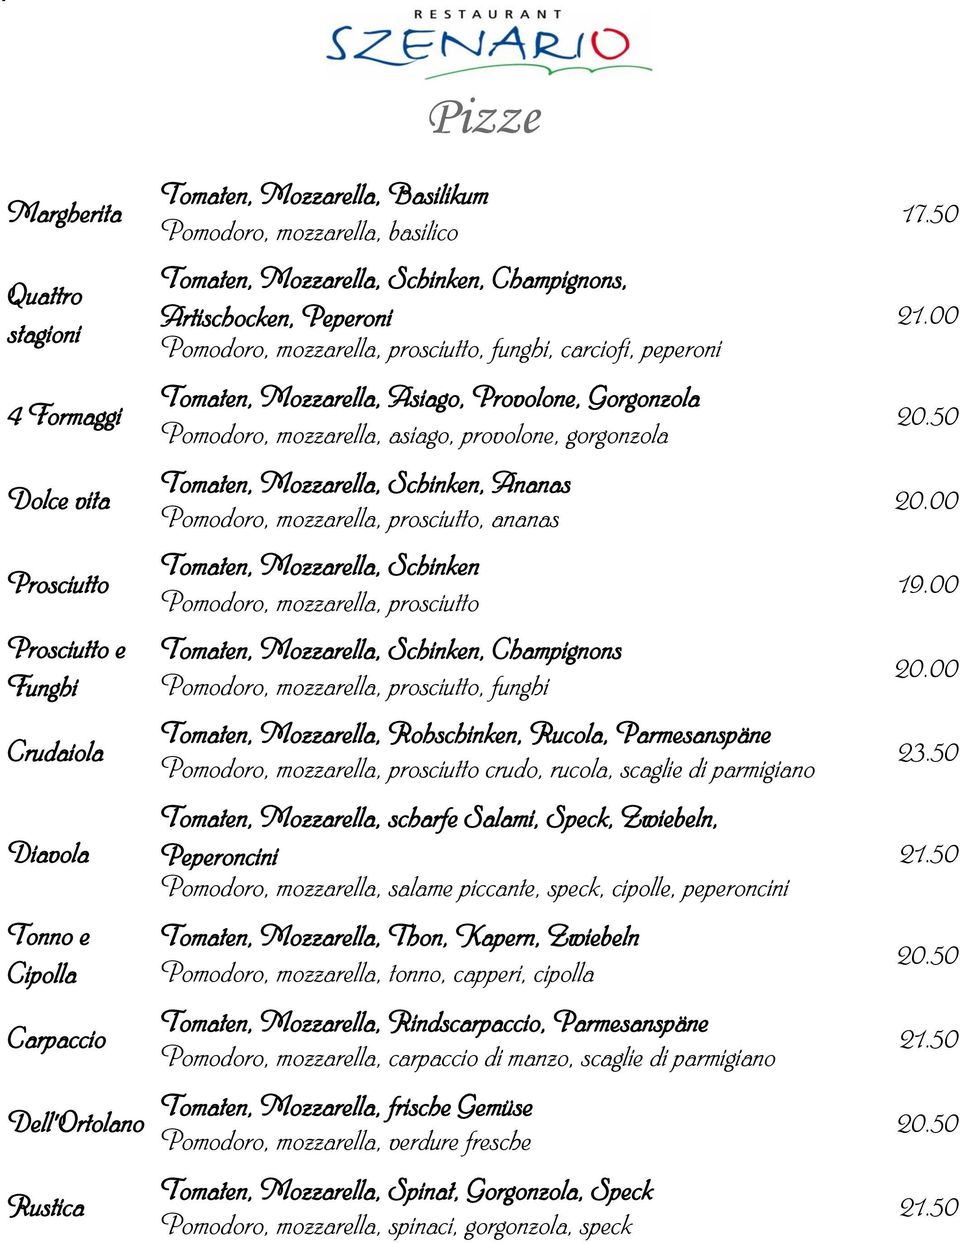 Mozzarella, Asiago, Provolone, Gorgonzola 4 Formaggi Pomodoro, mozzarella, asiago, provolone, gorgonzola Tomaten, Mozzarella, Schinken, Ananas Dolce vita 20.